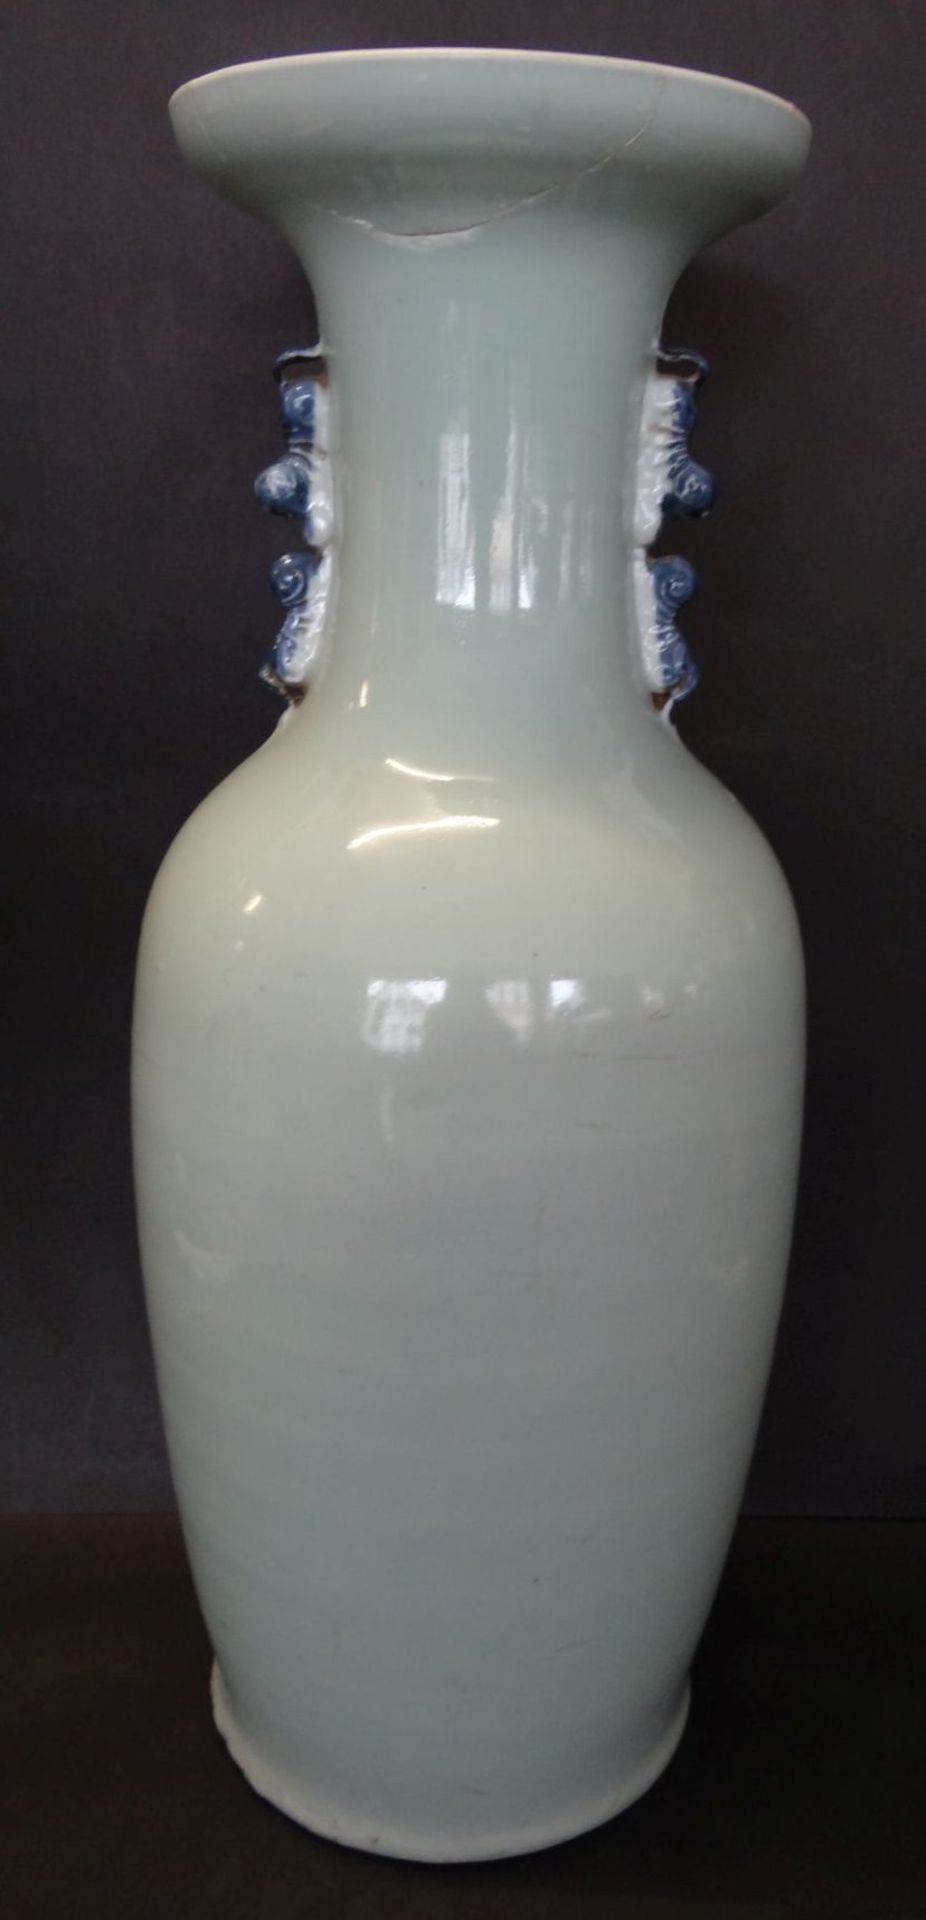 hohe China-Vase mit Blaumalerei, 19.Jhd., Rand geklebt, H-58 cm - Bild 3 aus 6